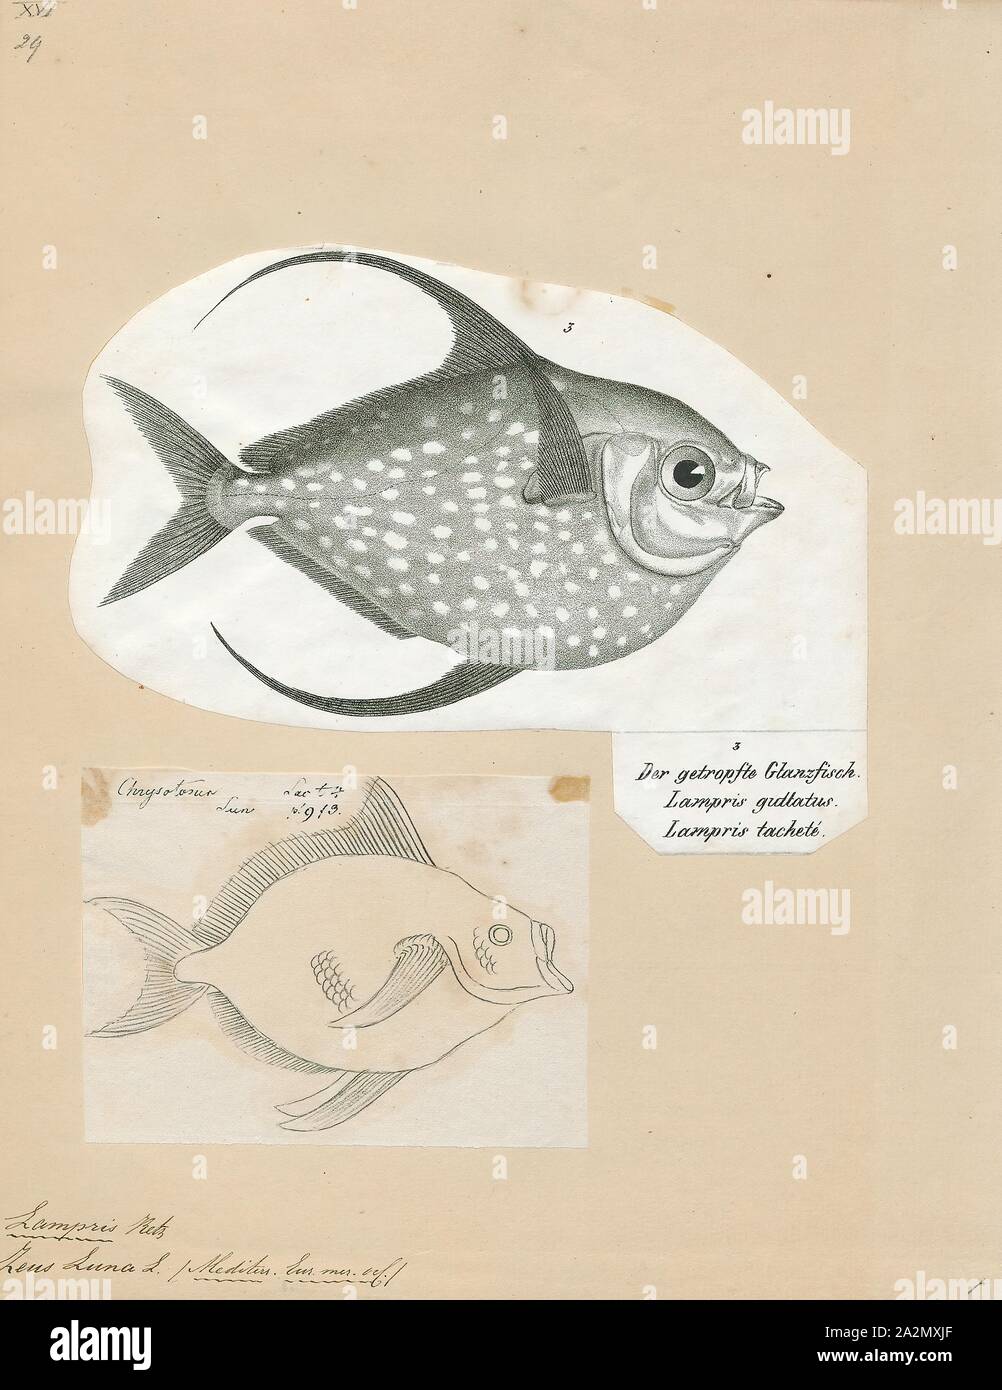 Lampris luna, Imprimer, dieux, Opahs (aussi connu sous le nom de moonfish, soleil (à ne pas confondre avec Molidae), kingfish, le pan de l'océan, et de l'aiglefin de Jérusalem) sont grandes, colorées, corps profond poissons pélagiques lampriform comprenant la petite famille Lampridae (également orthographié Lamprididae). Seulement deux espèces vivantes se produire dans un seul genre : Lampris (du grec lamprid-, 'excellent' ou 'clear'). Une espèce se trouve dans les eaux tempérées à tropicales de la plupart des océans, tandis que l'autre est limitée à une distribution circumglobale dans l'océan Austral, avec le 34°S comme sa limite nord. Deux autres Banque D'Images